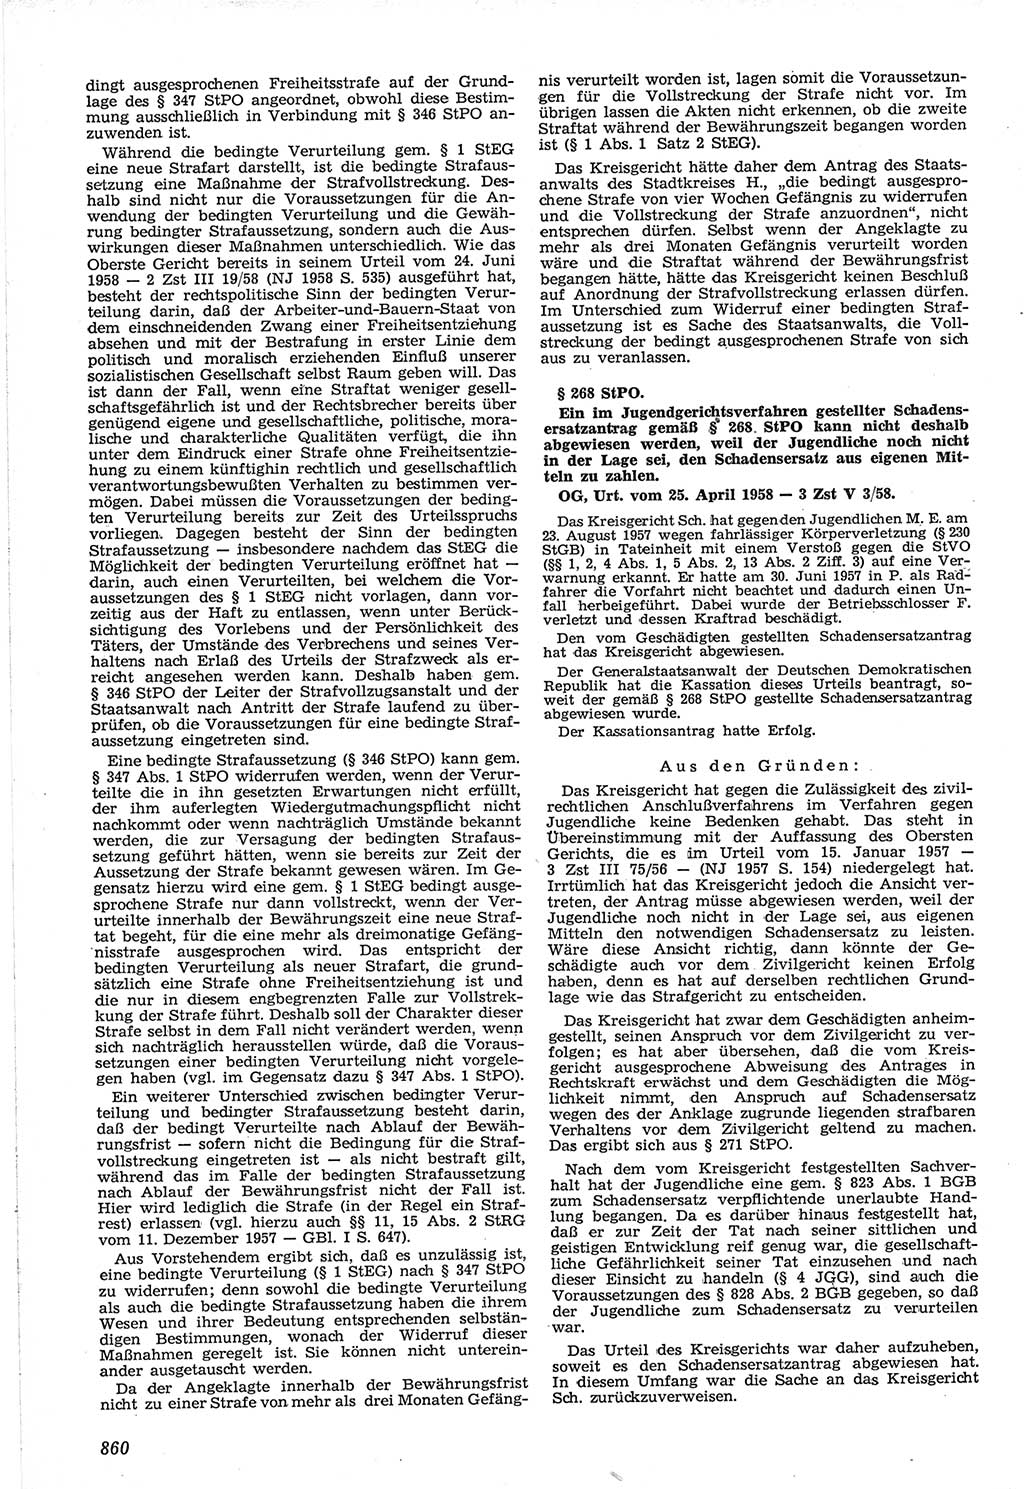 Neue Justiz (NJ), Zeitschrift für Recht und Rechtswissenschaft [Deutsche Demokratische Republik (DDR)], 12. Jahrgang 1958, Seite 860 (NJ DDR 1958, S. 860)